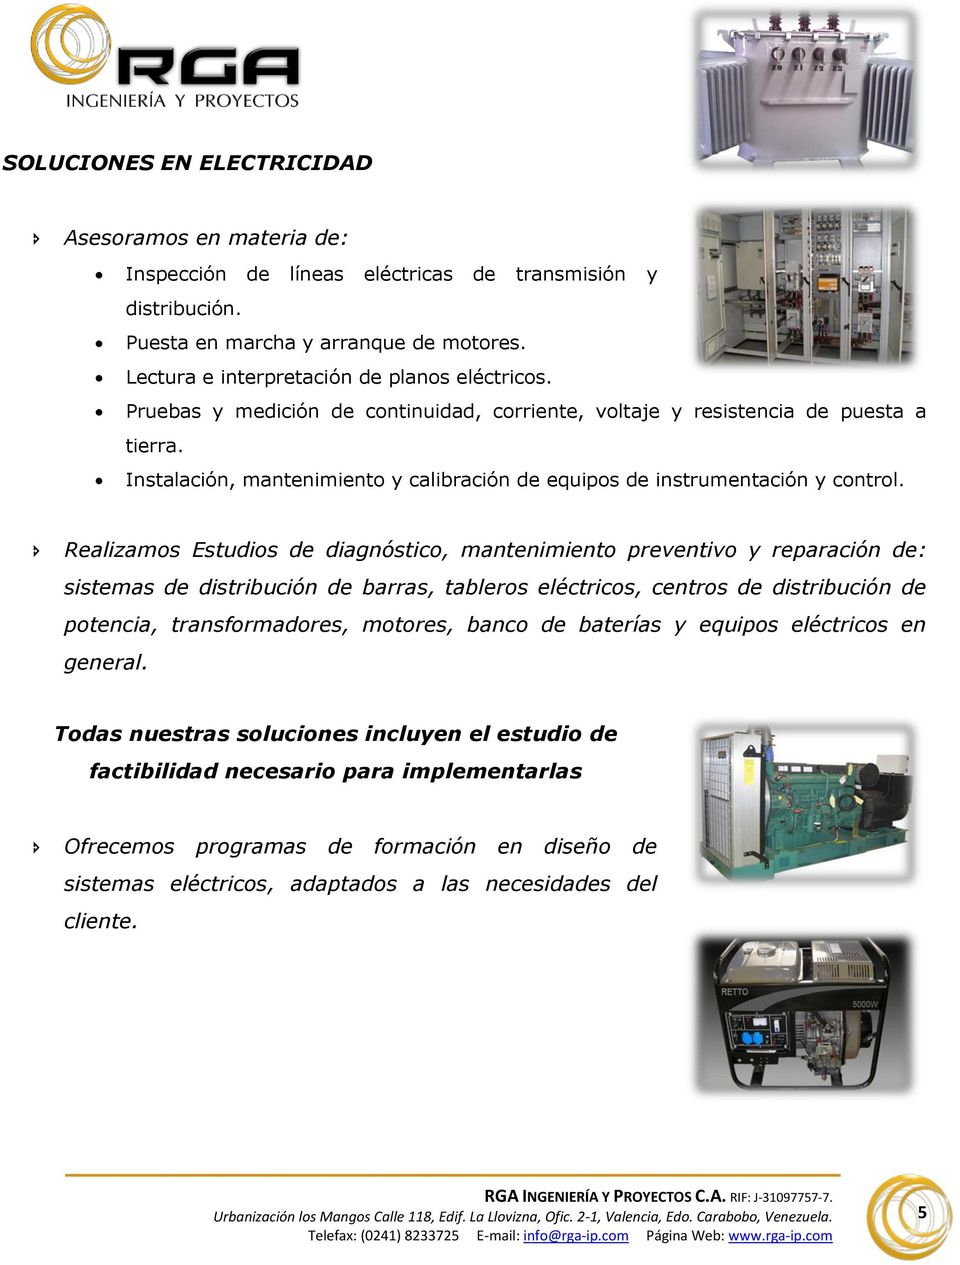 Instalación, mantenimiento y calibración de equipos de instrumentación y control.